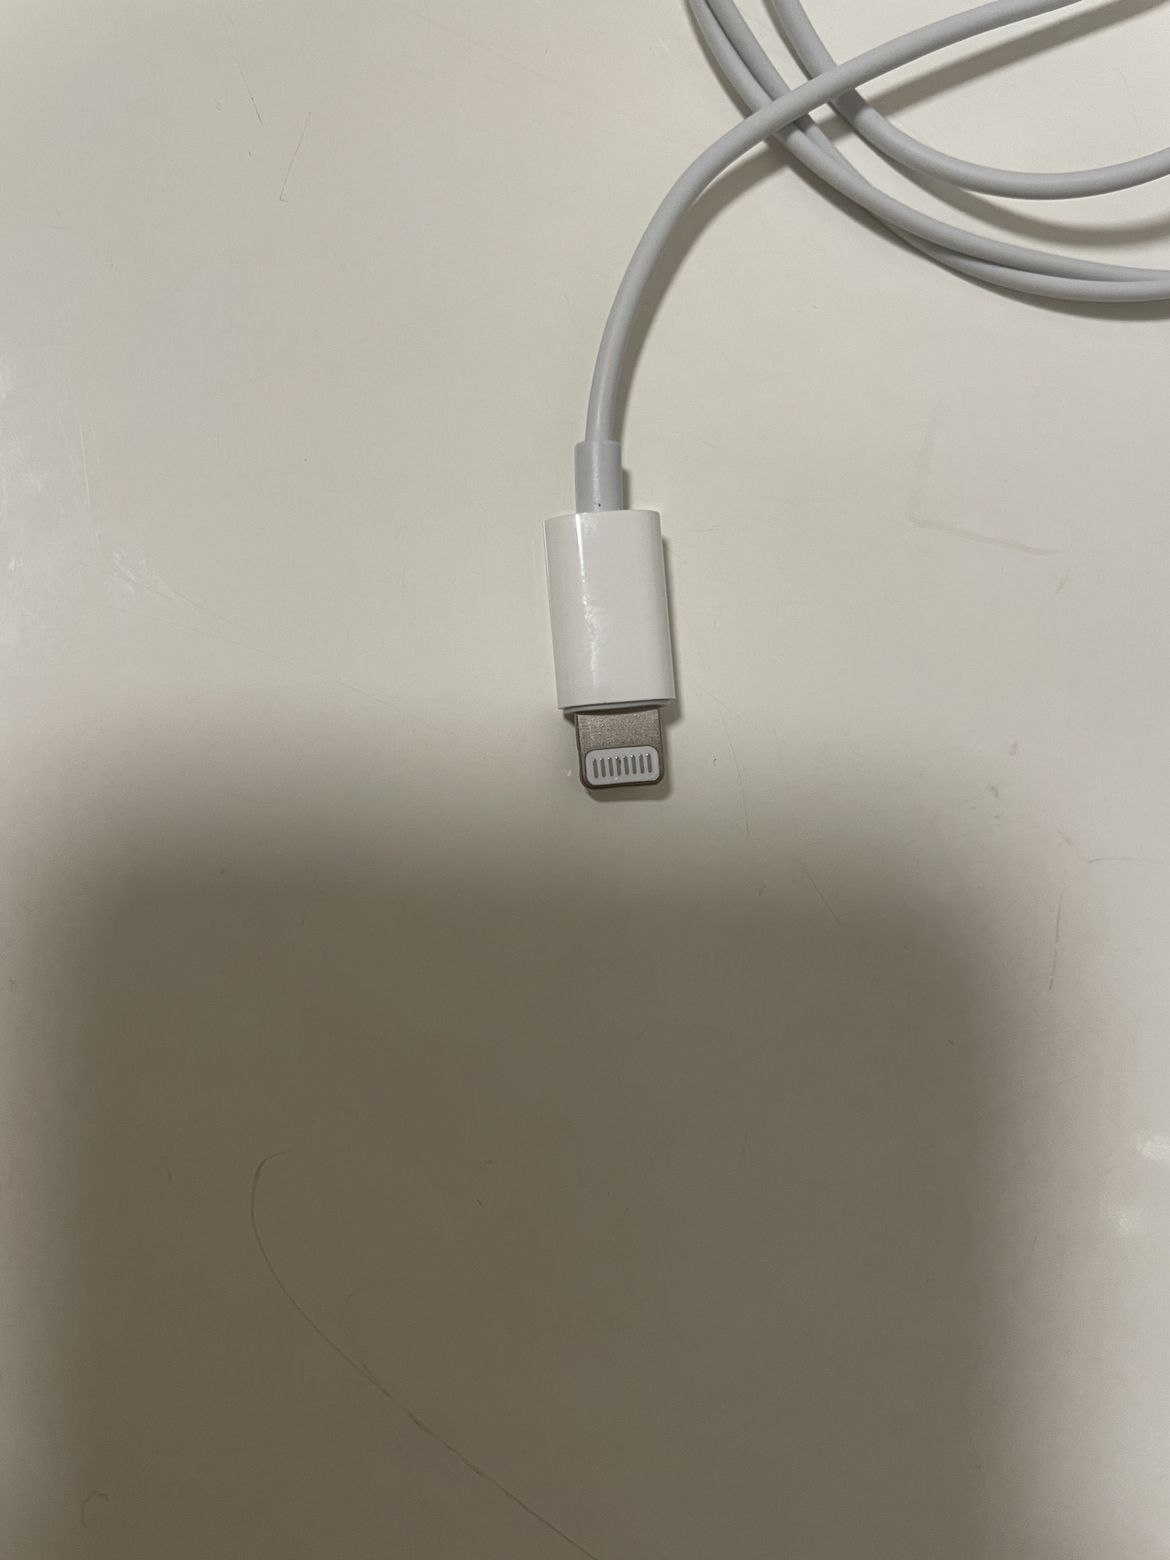 Apple原装 采用Lightning/闪电接头的 EarPods 耳机 iPhone iPad有线耳机TN2晒单图